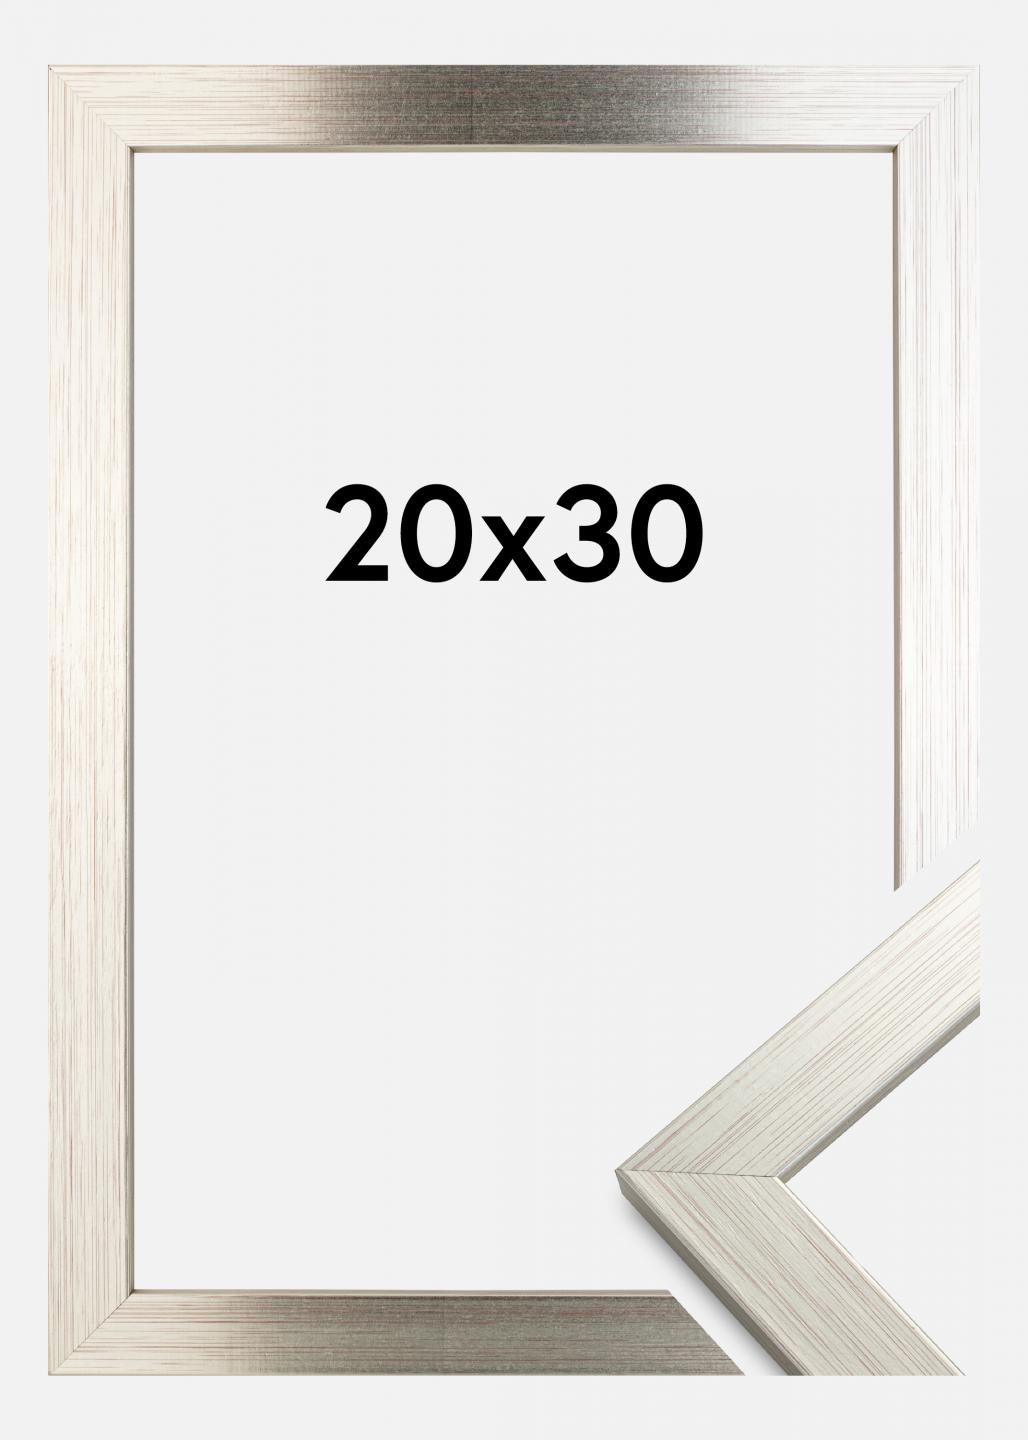 20 x 30 poster frame